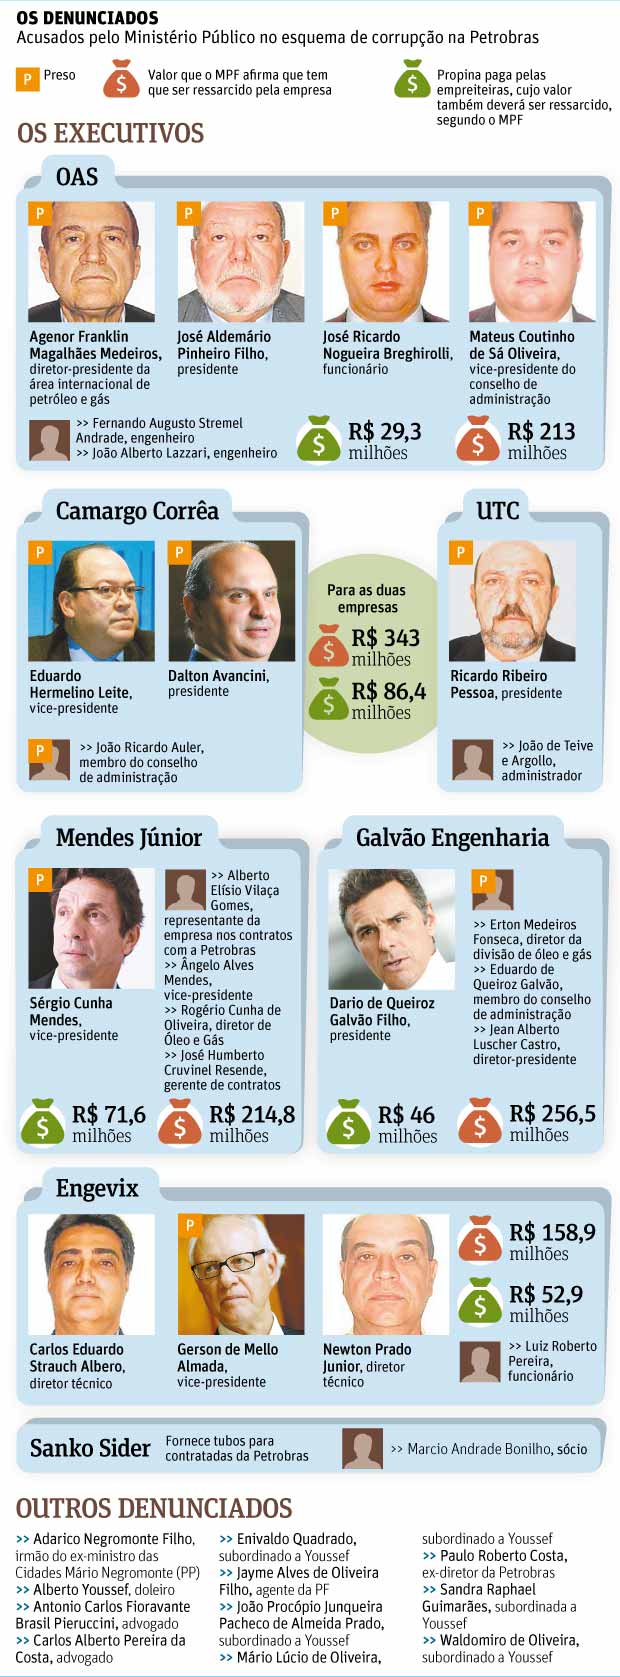 Folha de So Paulo - 12/12/14 - PETROlO: Os Denunciados - Editoria de Arte/Folhapress